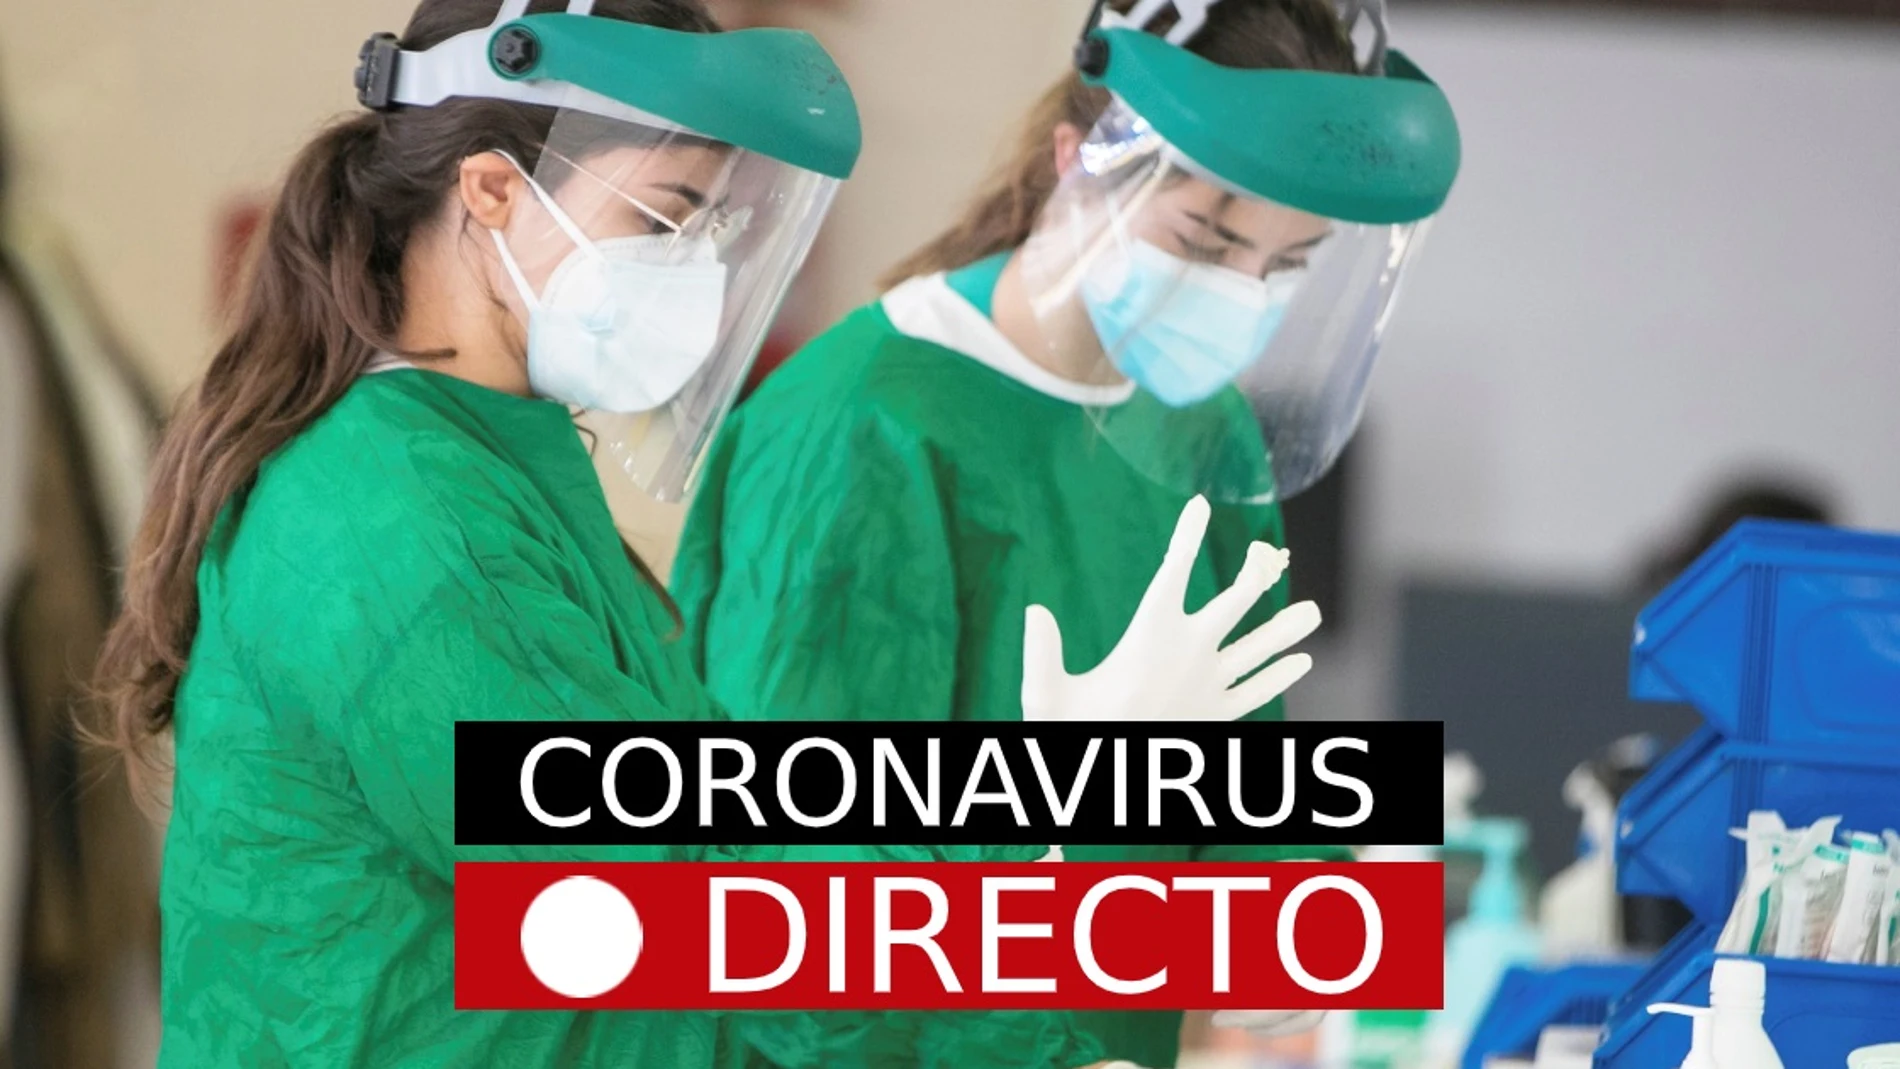 Coronavirus directo | Imagen de sanitarias con EPIs para protegerse del coronavirus